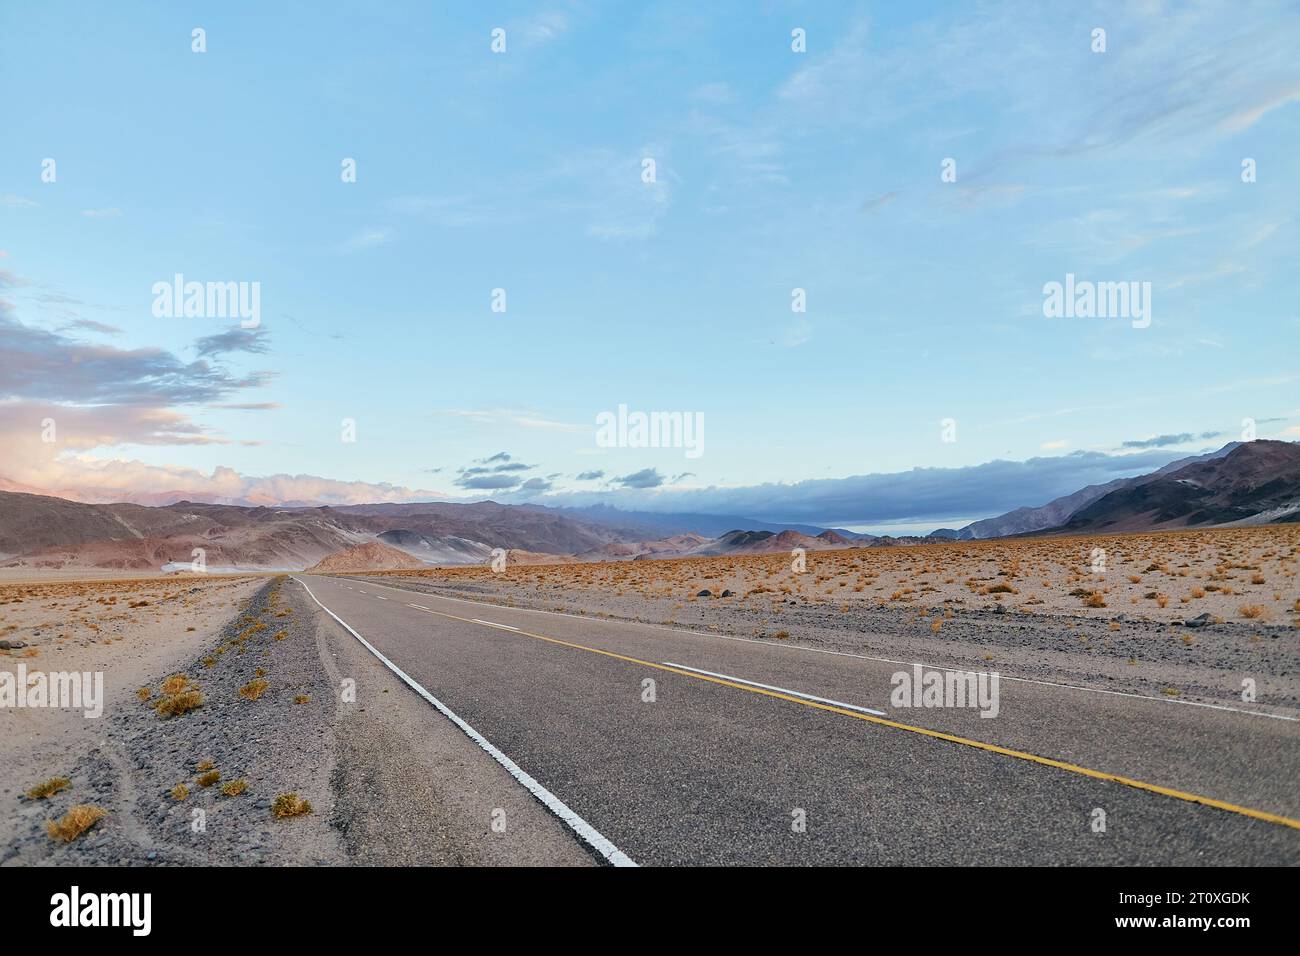 Ruta de Antofagasta de la Sierra, provincia de Catamarca Stock Photo